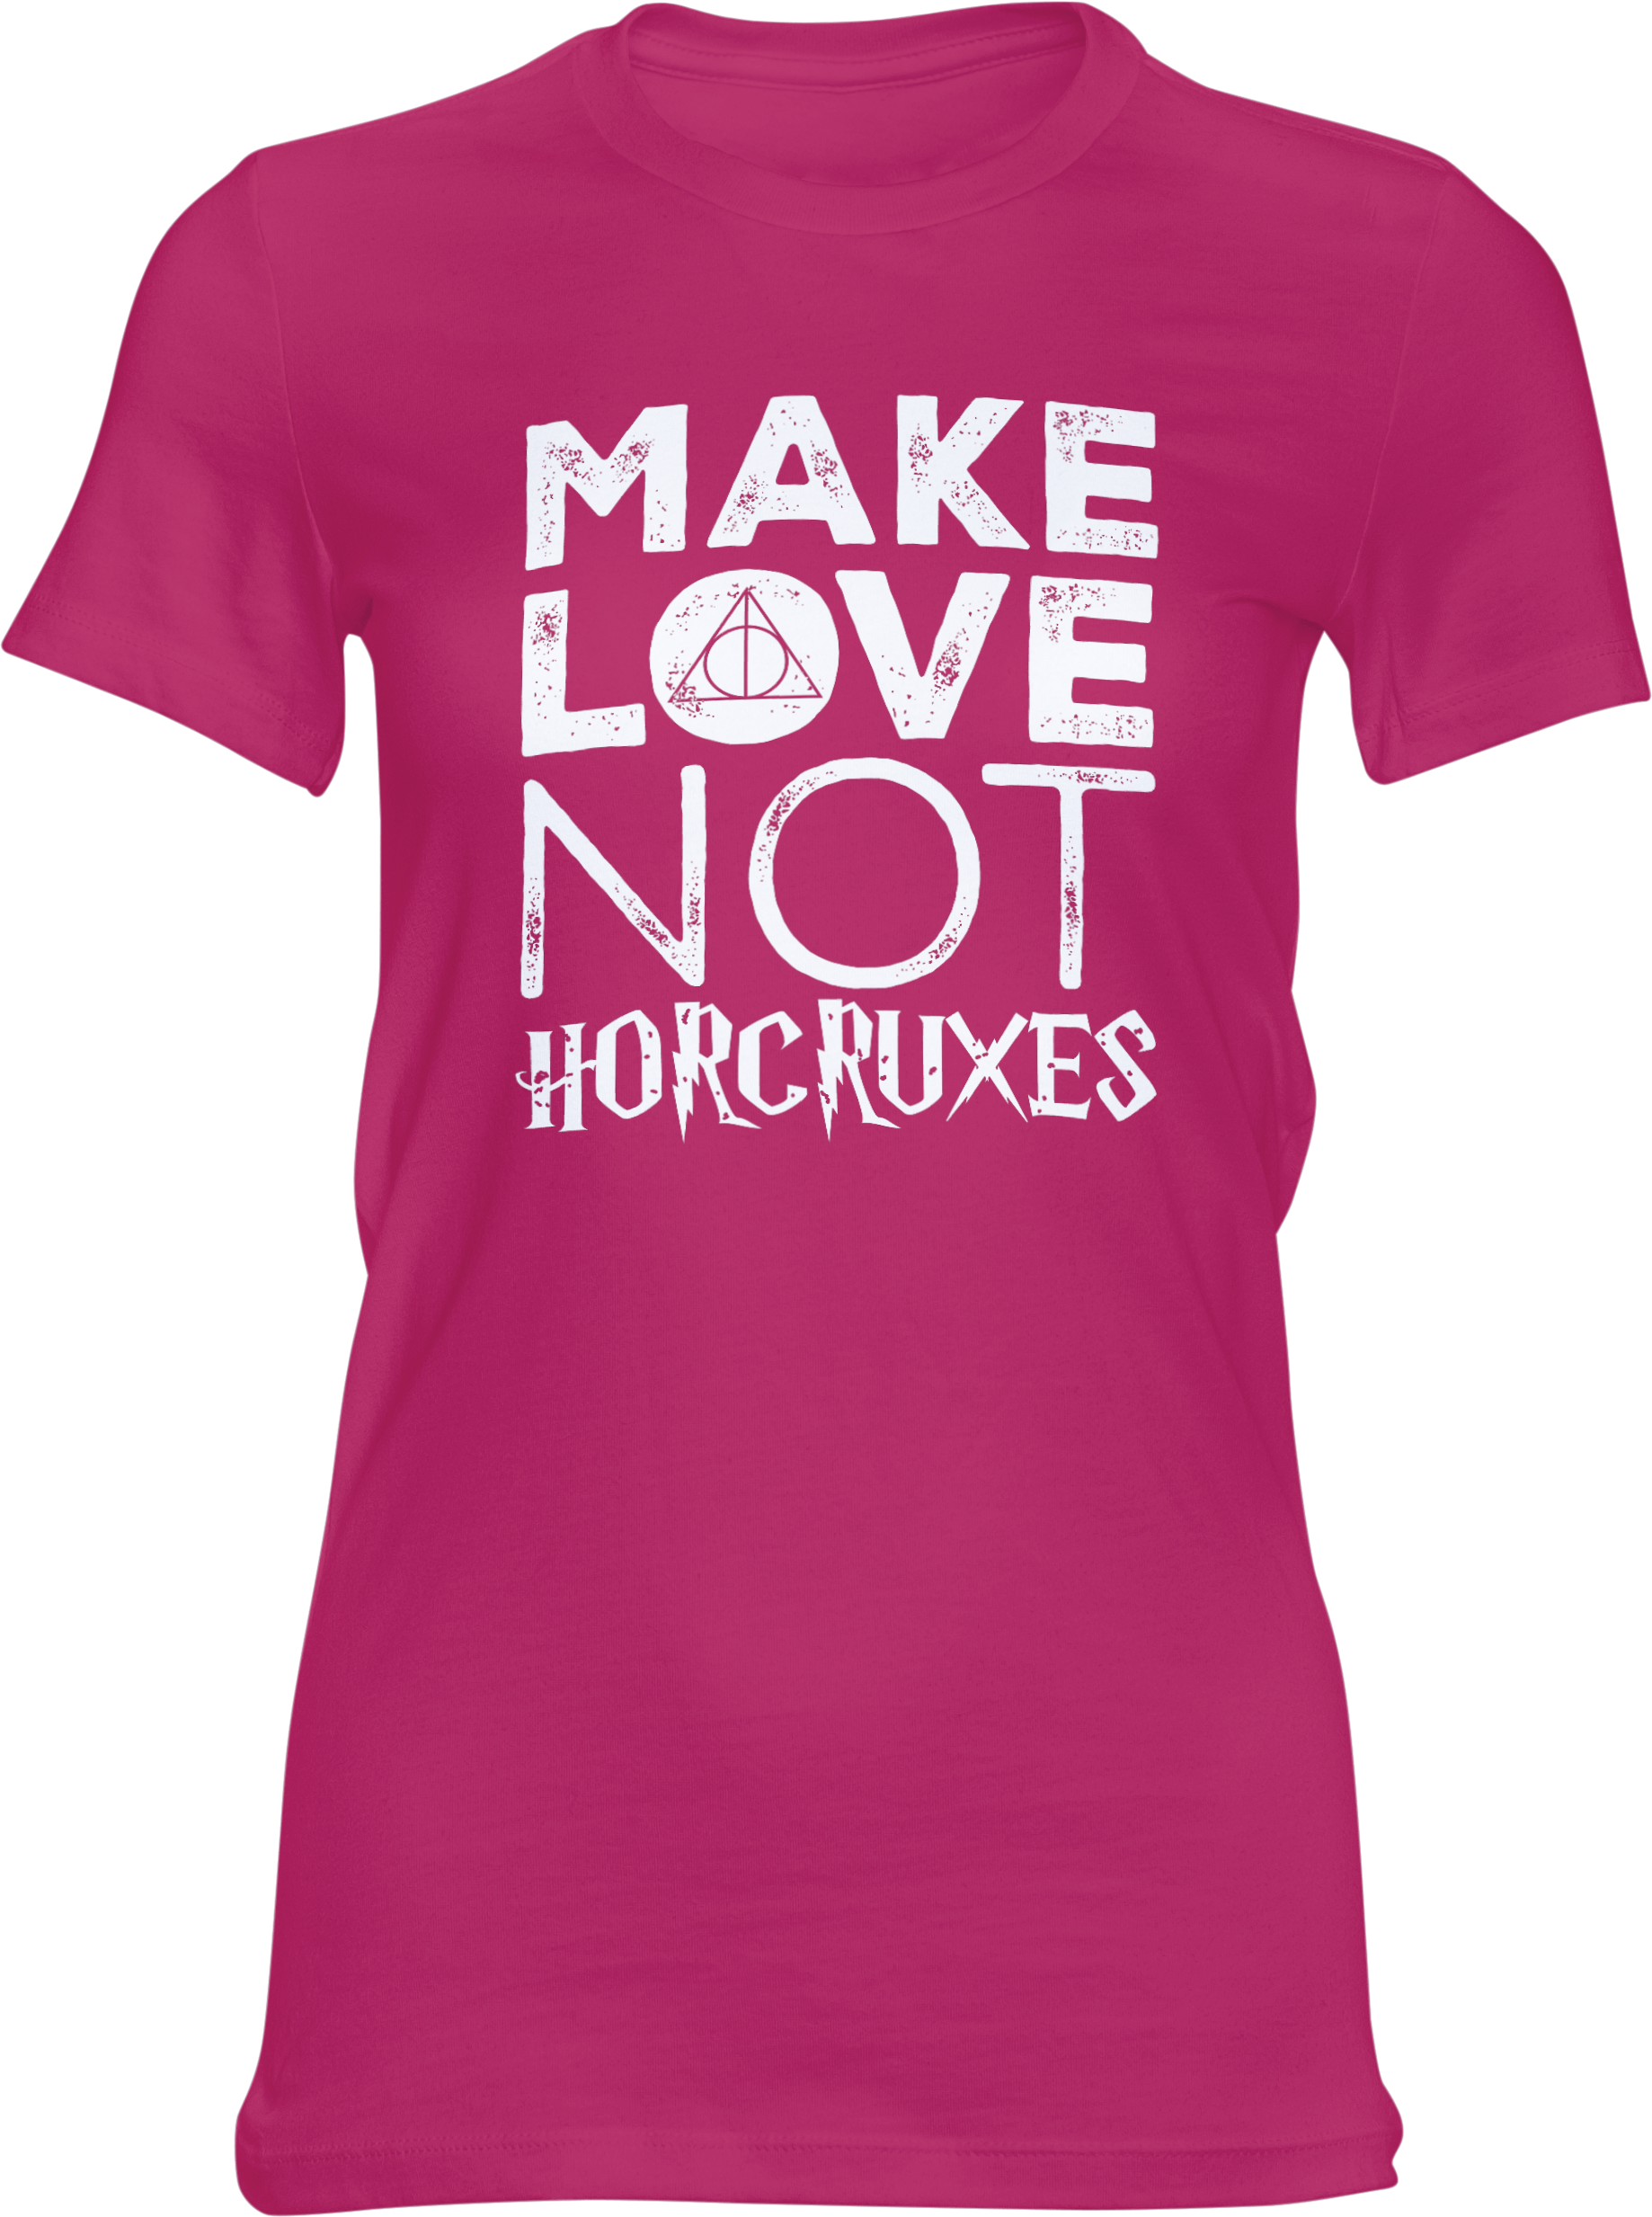 Motiv-Shirt – Make Love Not Horcruxes – Girlie-Shirt (pink)